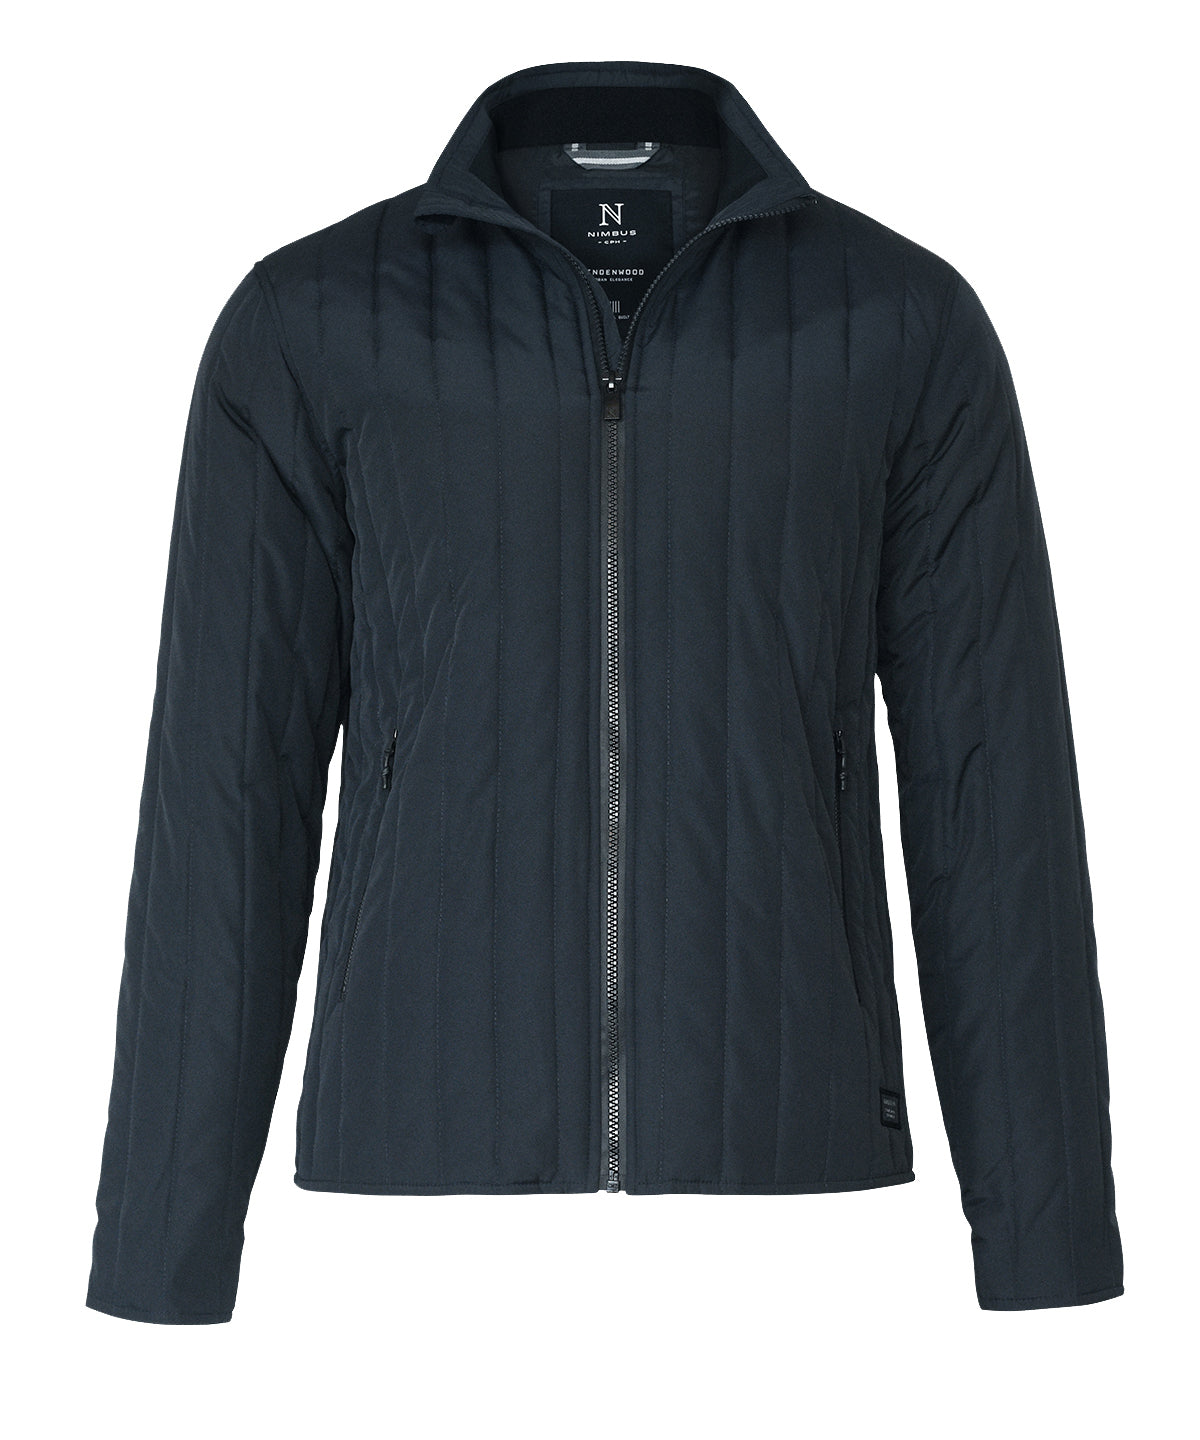 Nimbus Lindenwood – urban style quilted jacket